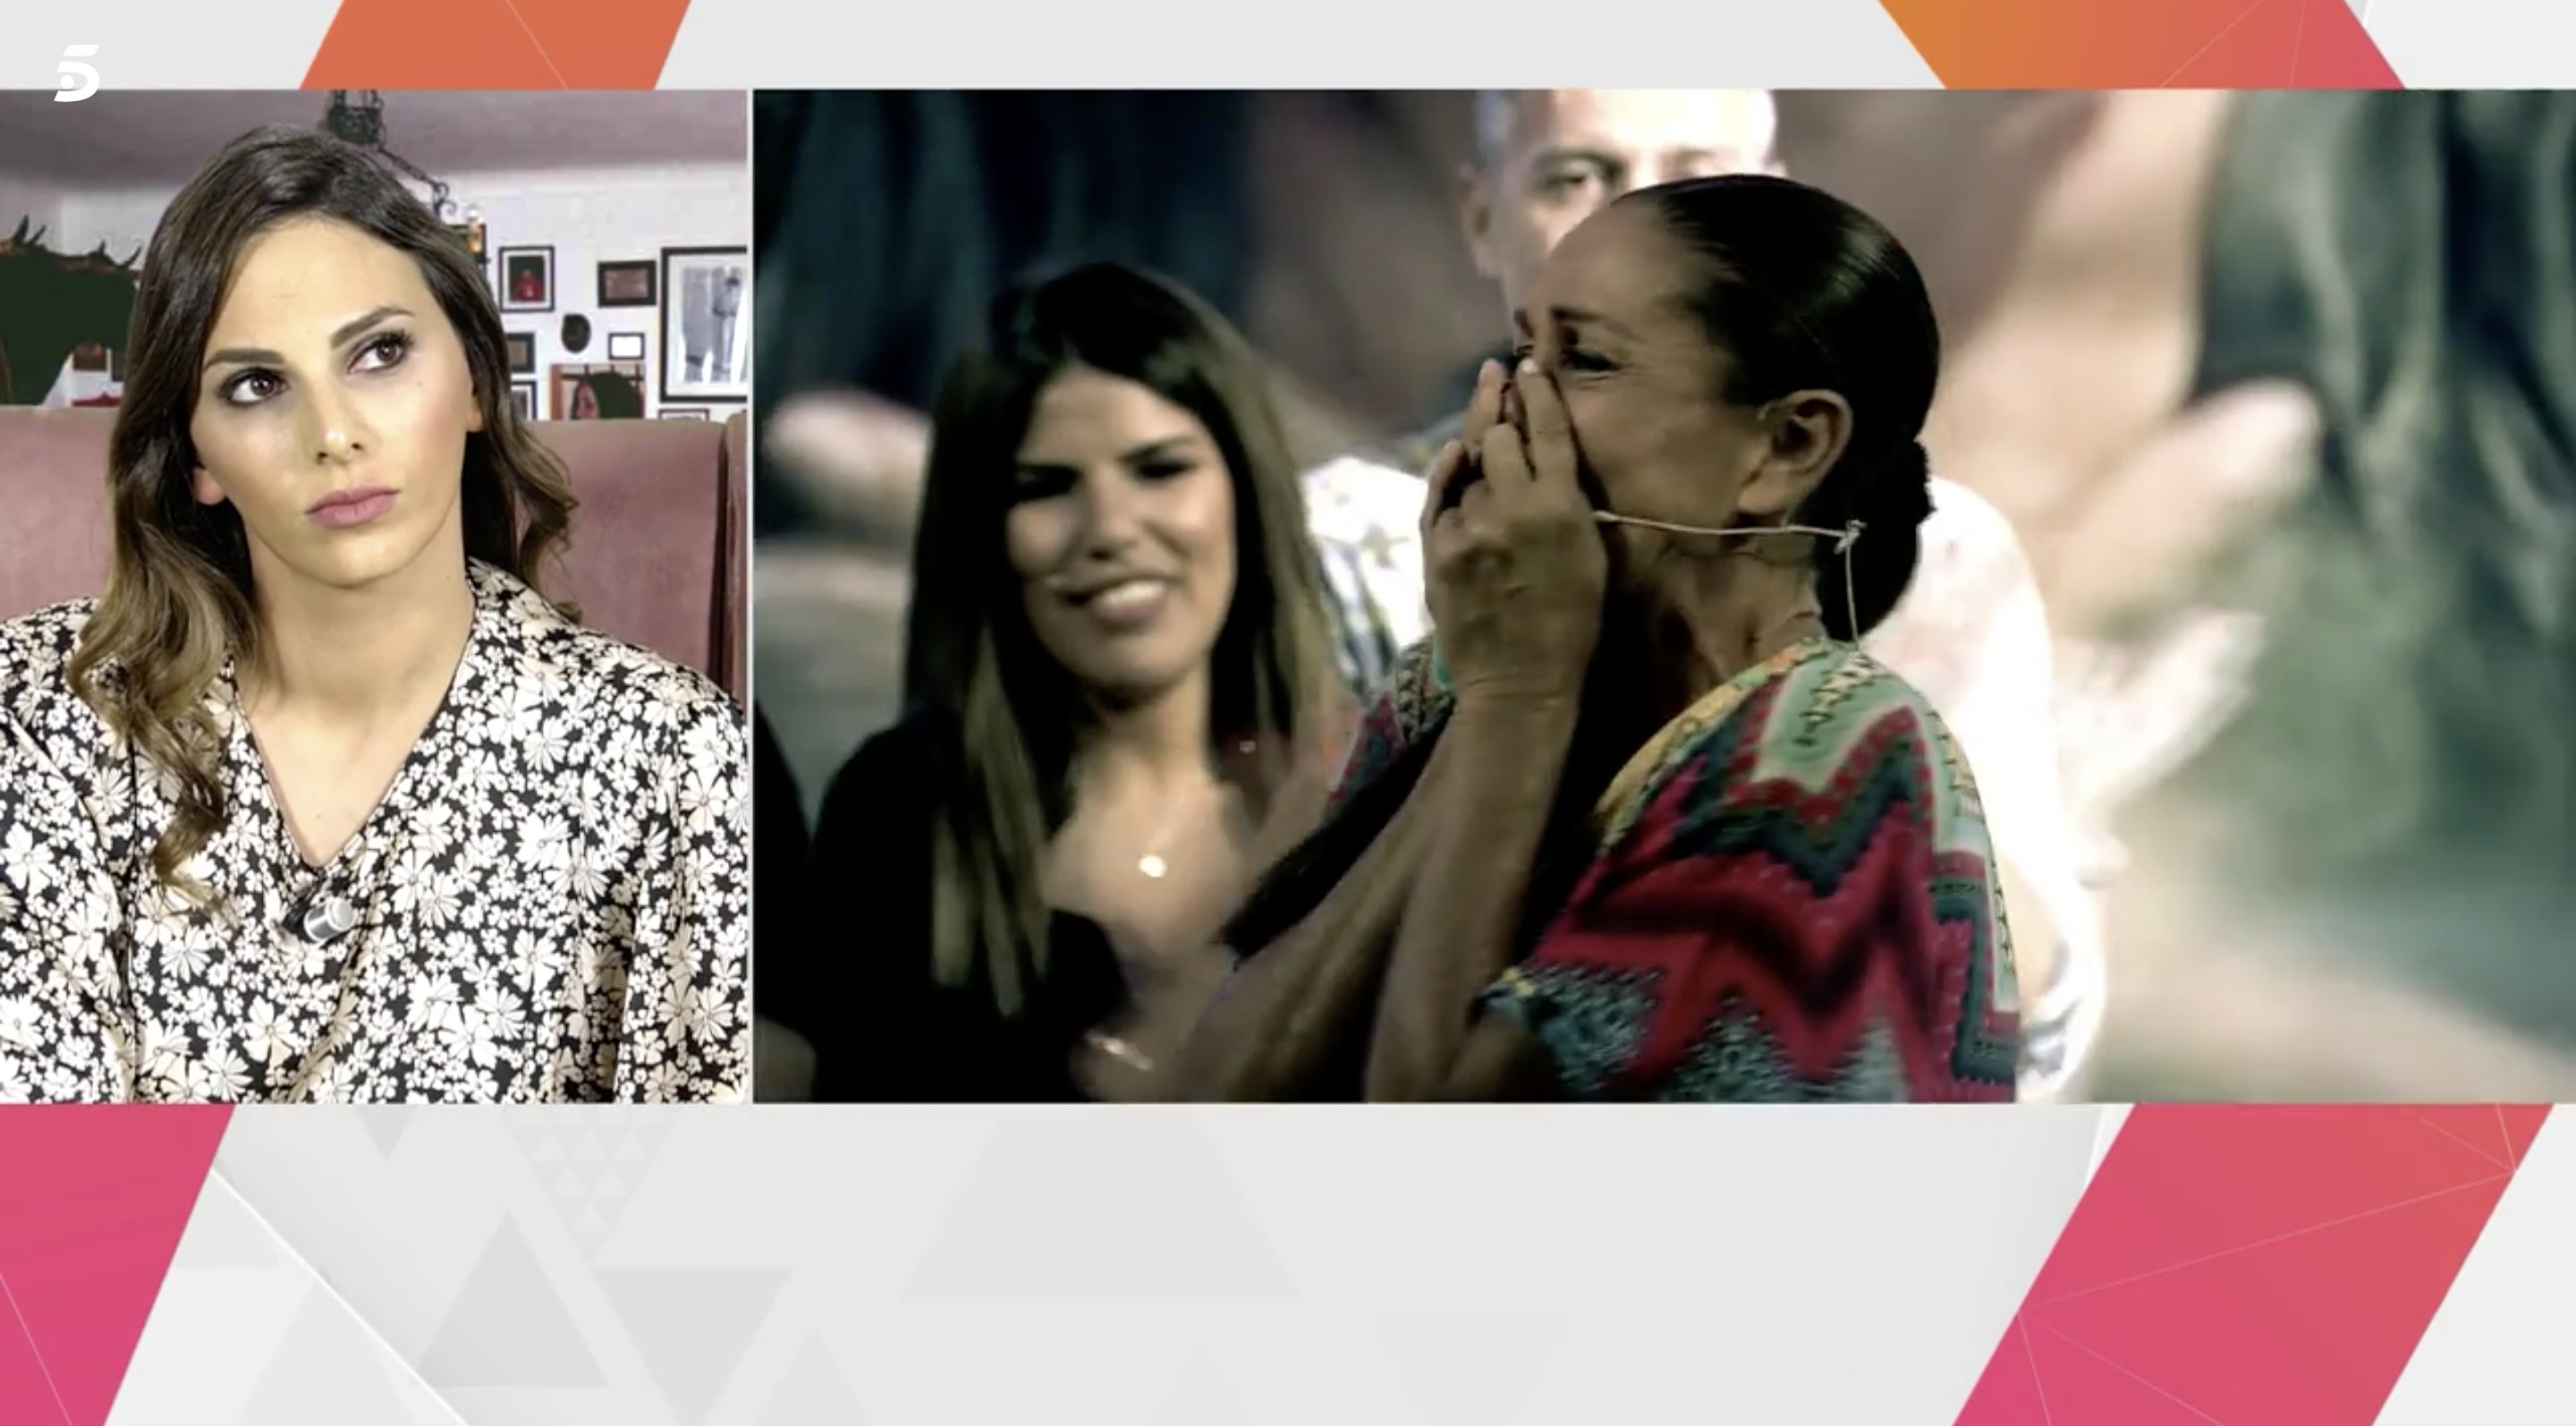 Irene Rosales asegura que en uno de los audios se dicen cosas ofensivas | Foto: Telecinco.es